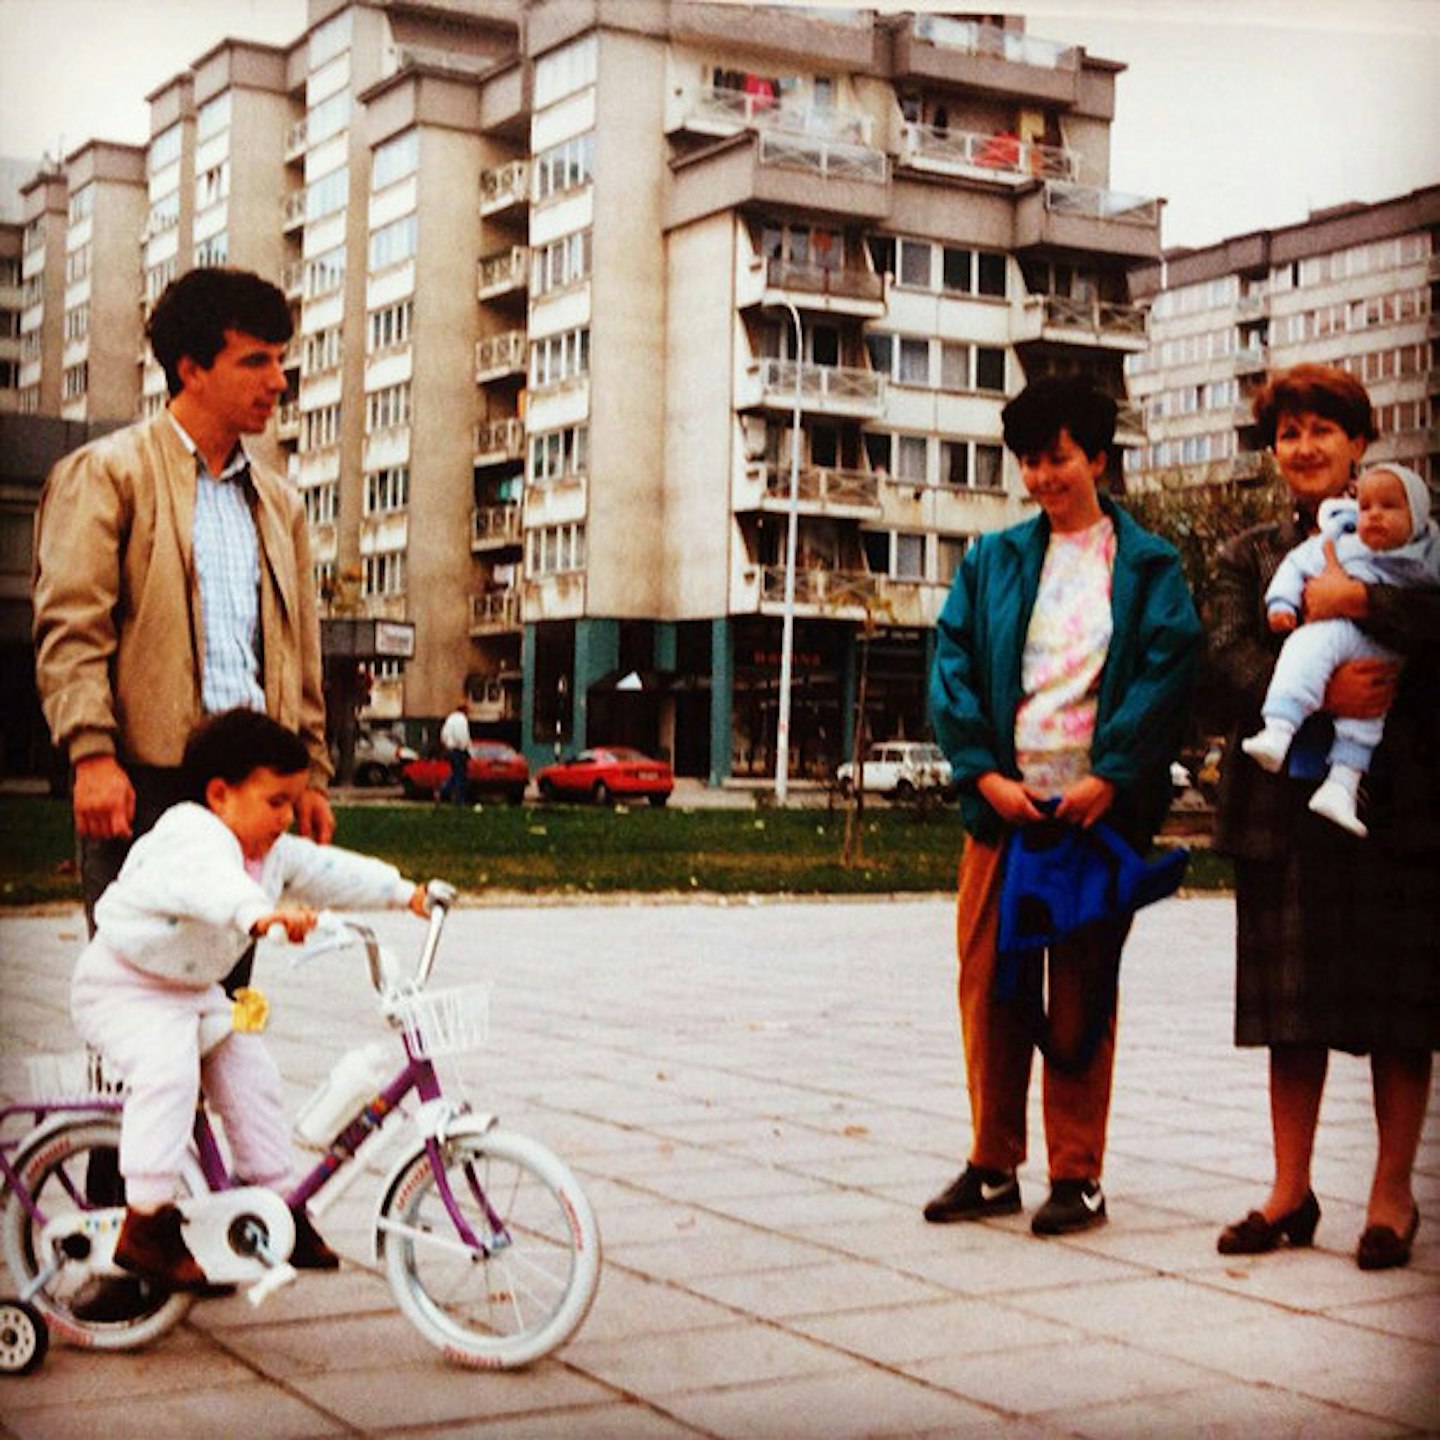 Aleks and her family in Sarajevo